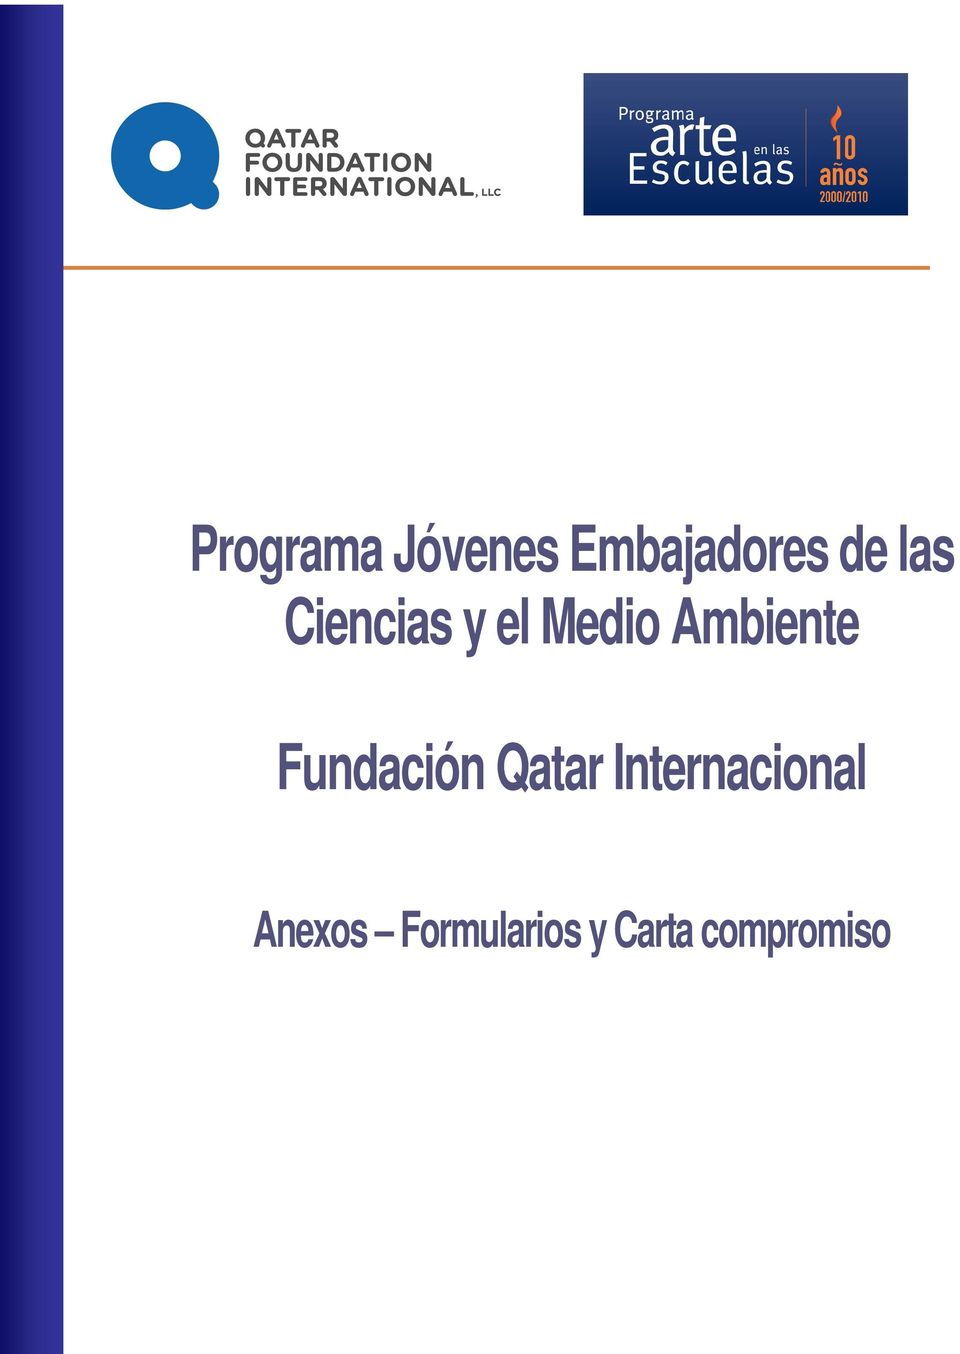 Fundación Qatar Internacional